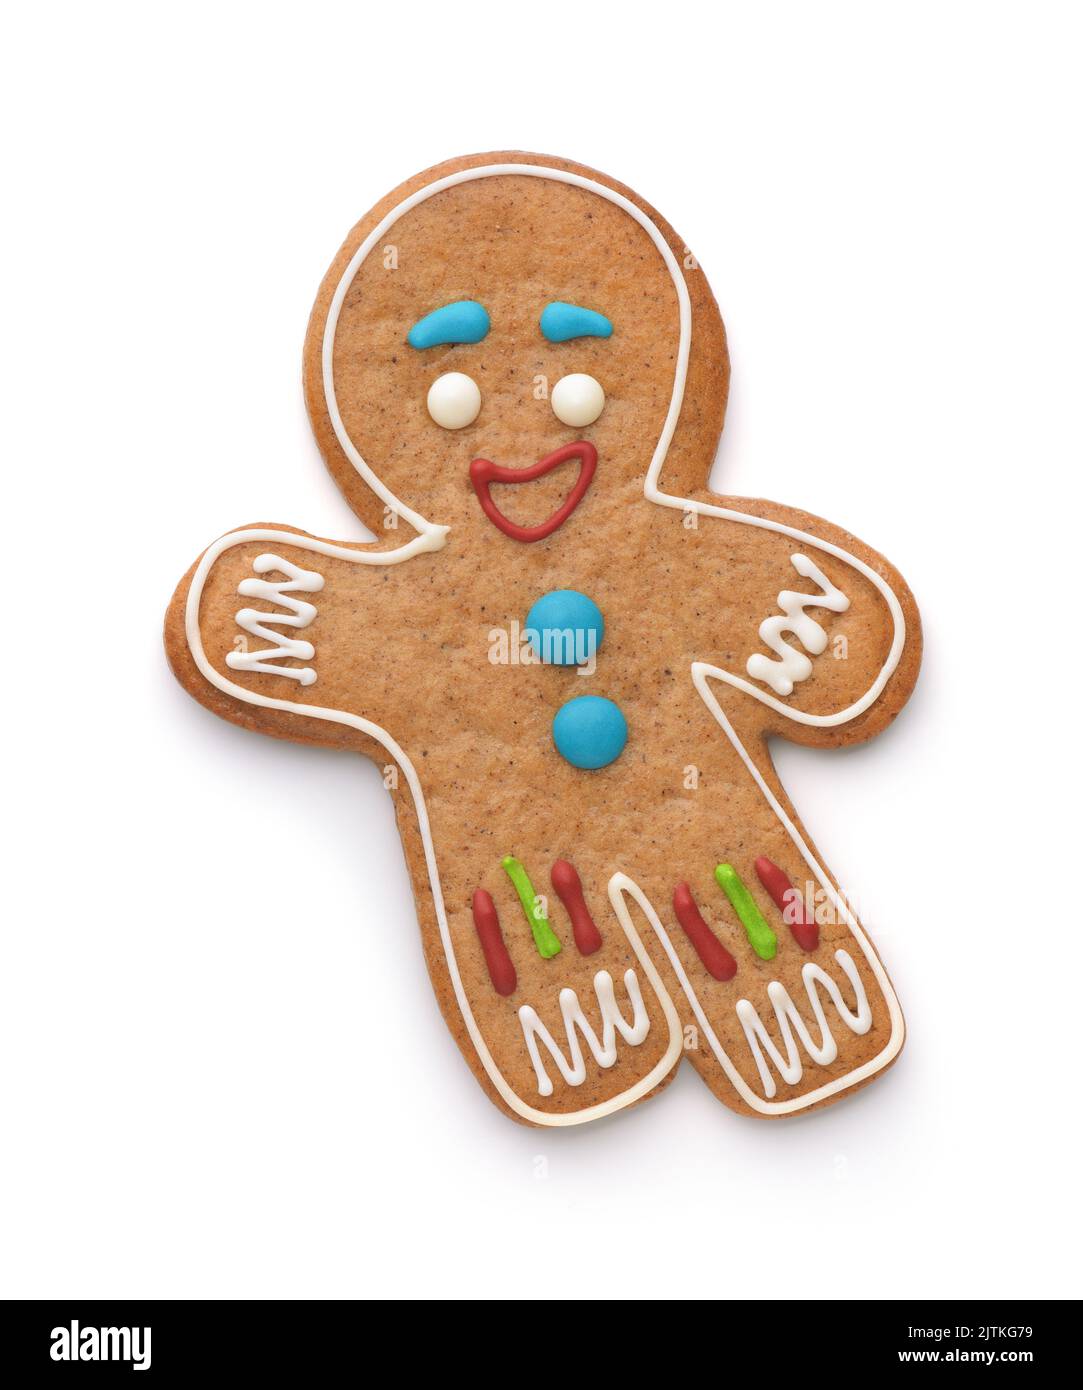 Vista superior de gingerbread man aislado en blanco Foto de stock